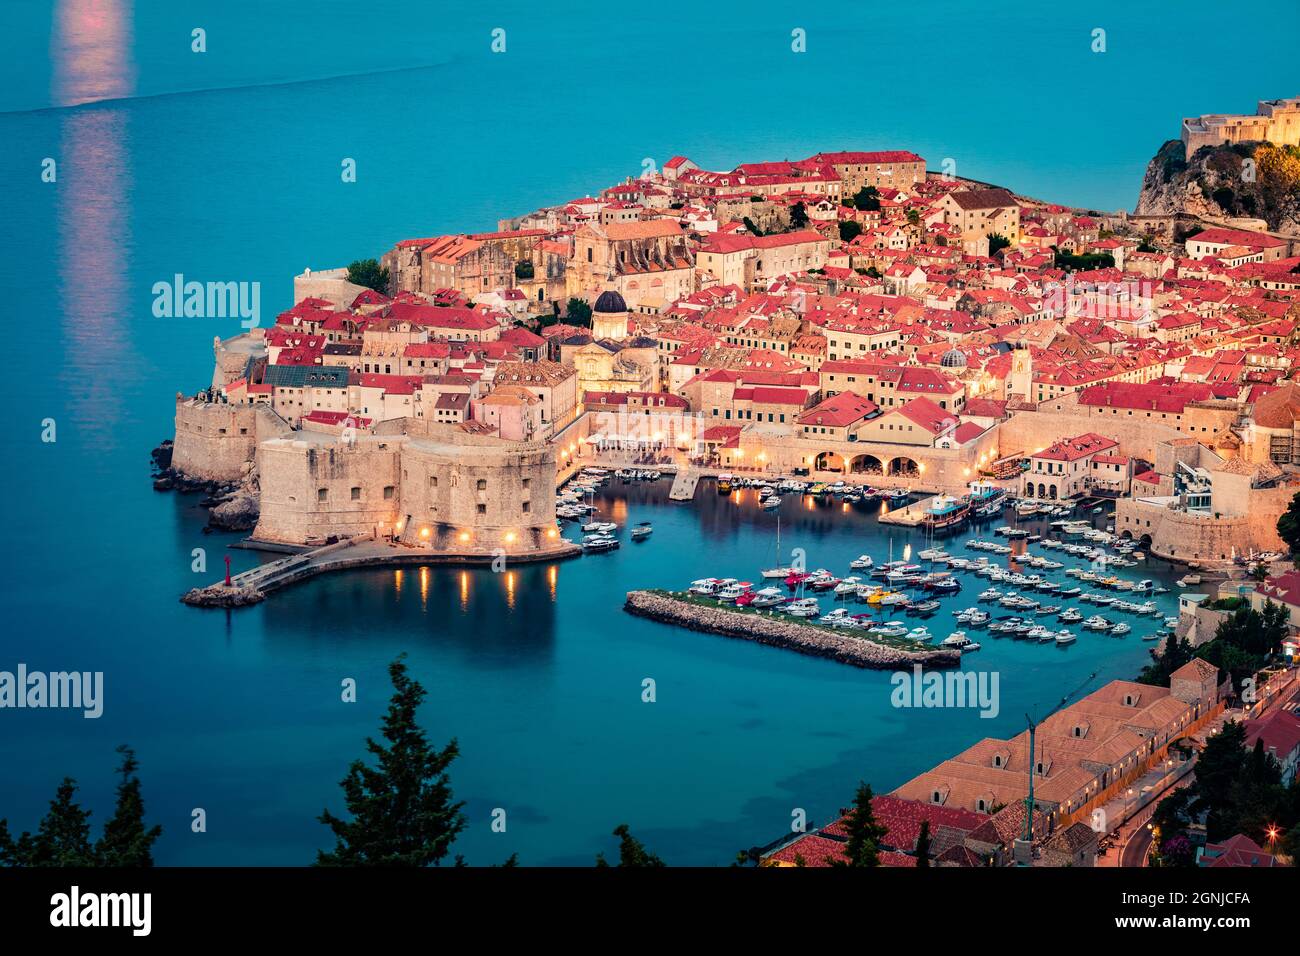 Fantastische Aussicht auf die Stadt Dubrovnik am Morgen. Attraktive Sommerseelandschaft der Adria, Kroatien, Europa. Schöne Welt der Mittelmeerländer. Tra Stockfoto